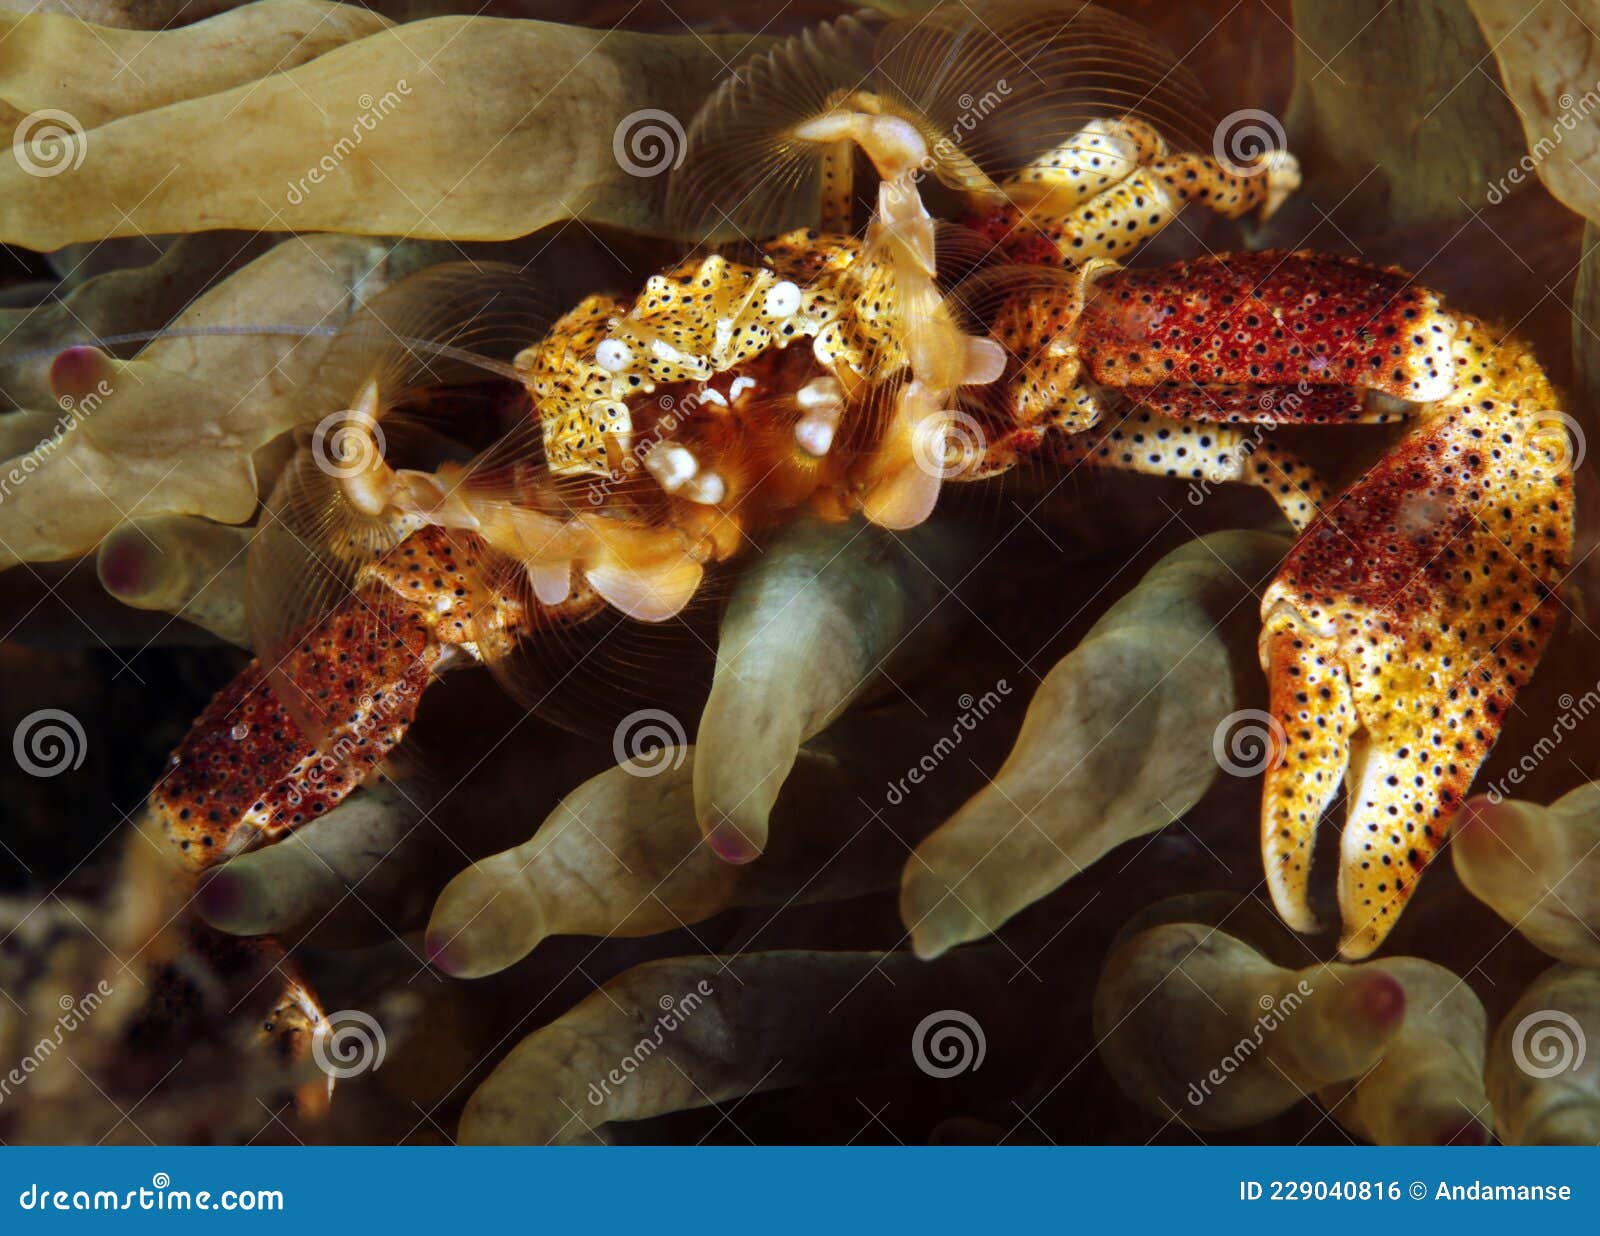 为什么螃蟹没有进化出抗旱螃蟹？比如在沙漠里生活的螃蟹? - 知乎